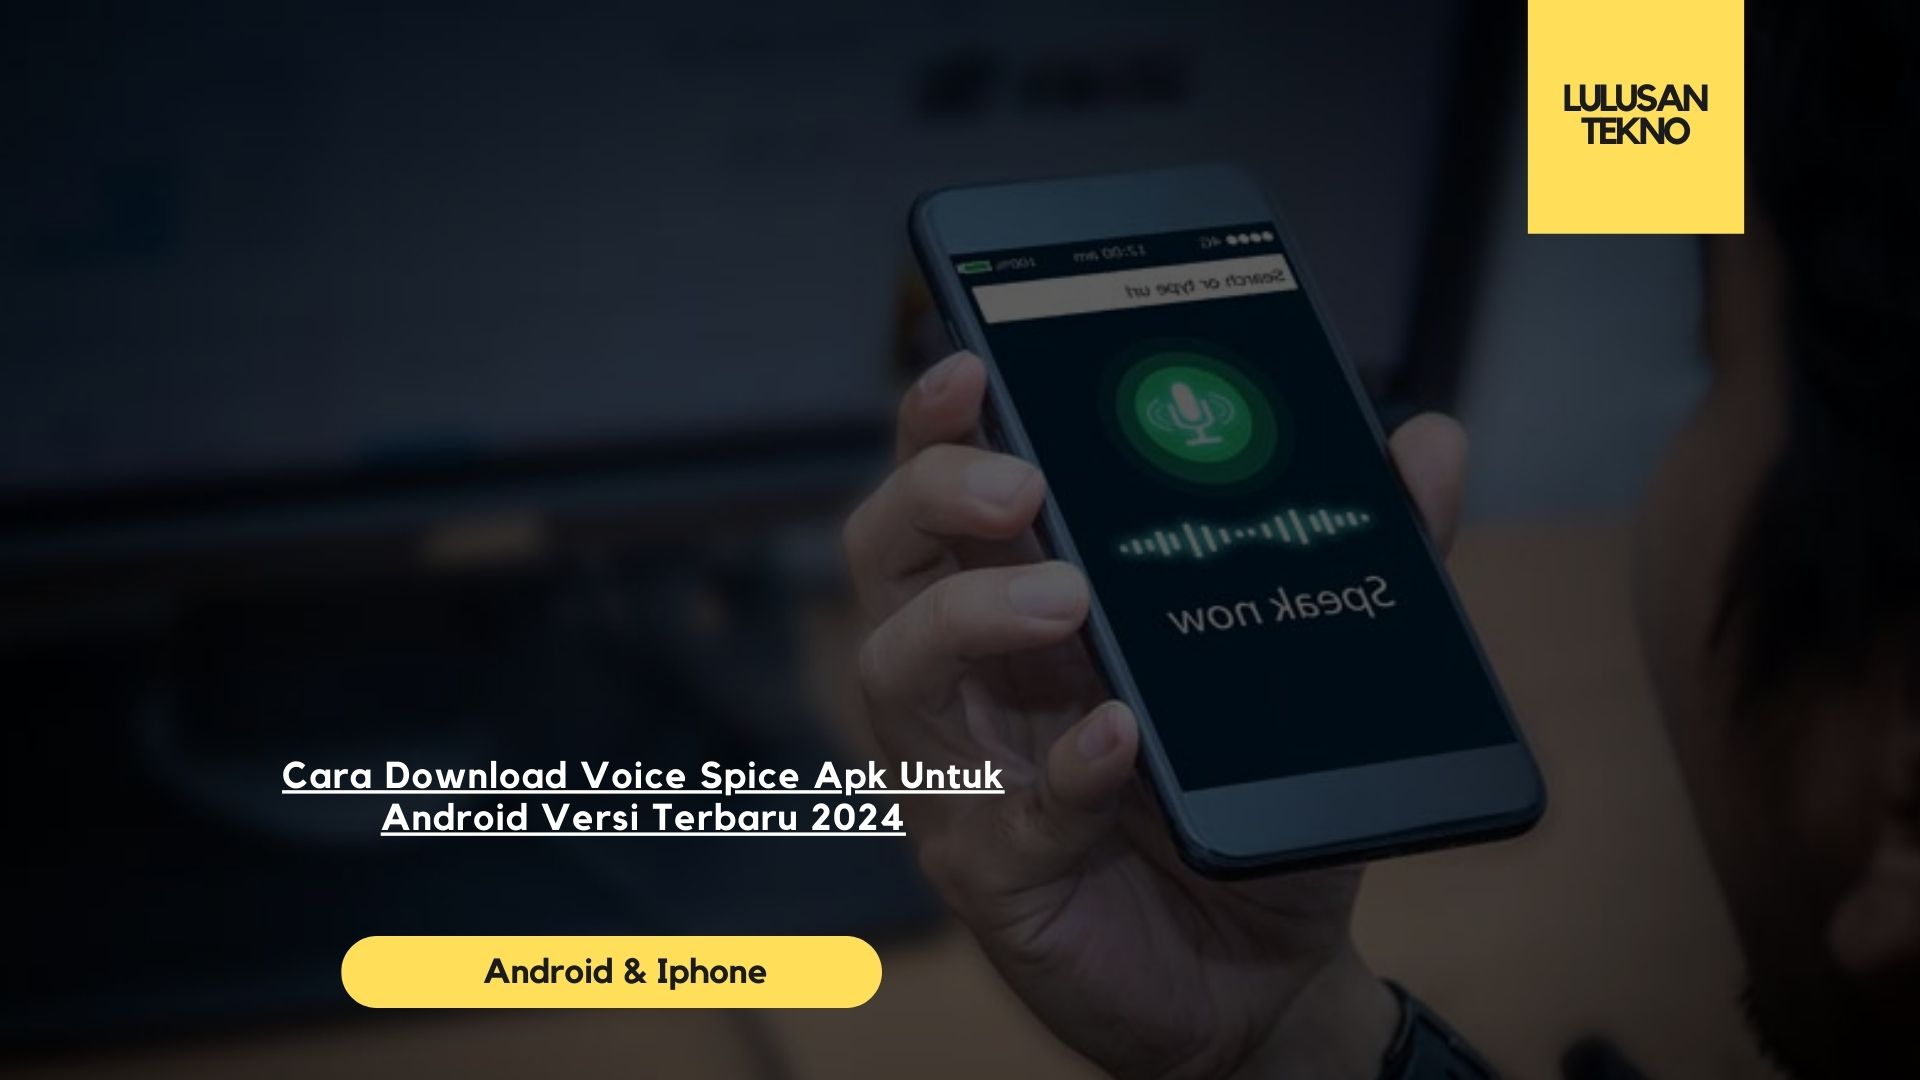 Cara Download Voice Spice Apk Untuk Android Versi Terbaru 2024